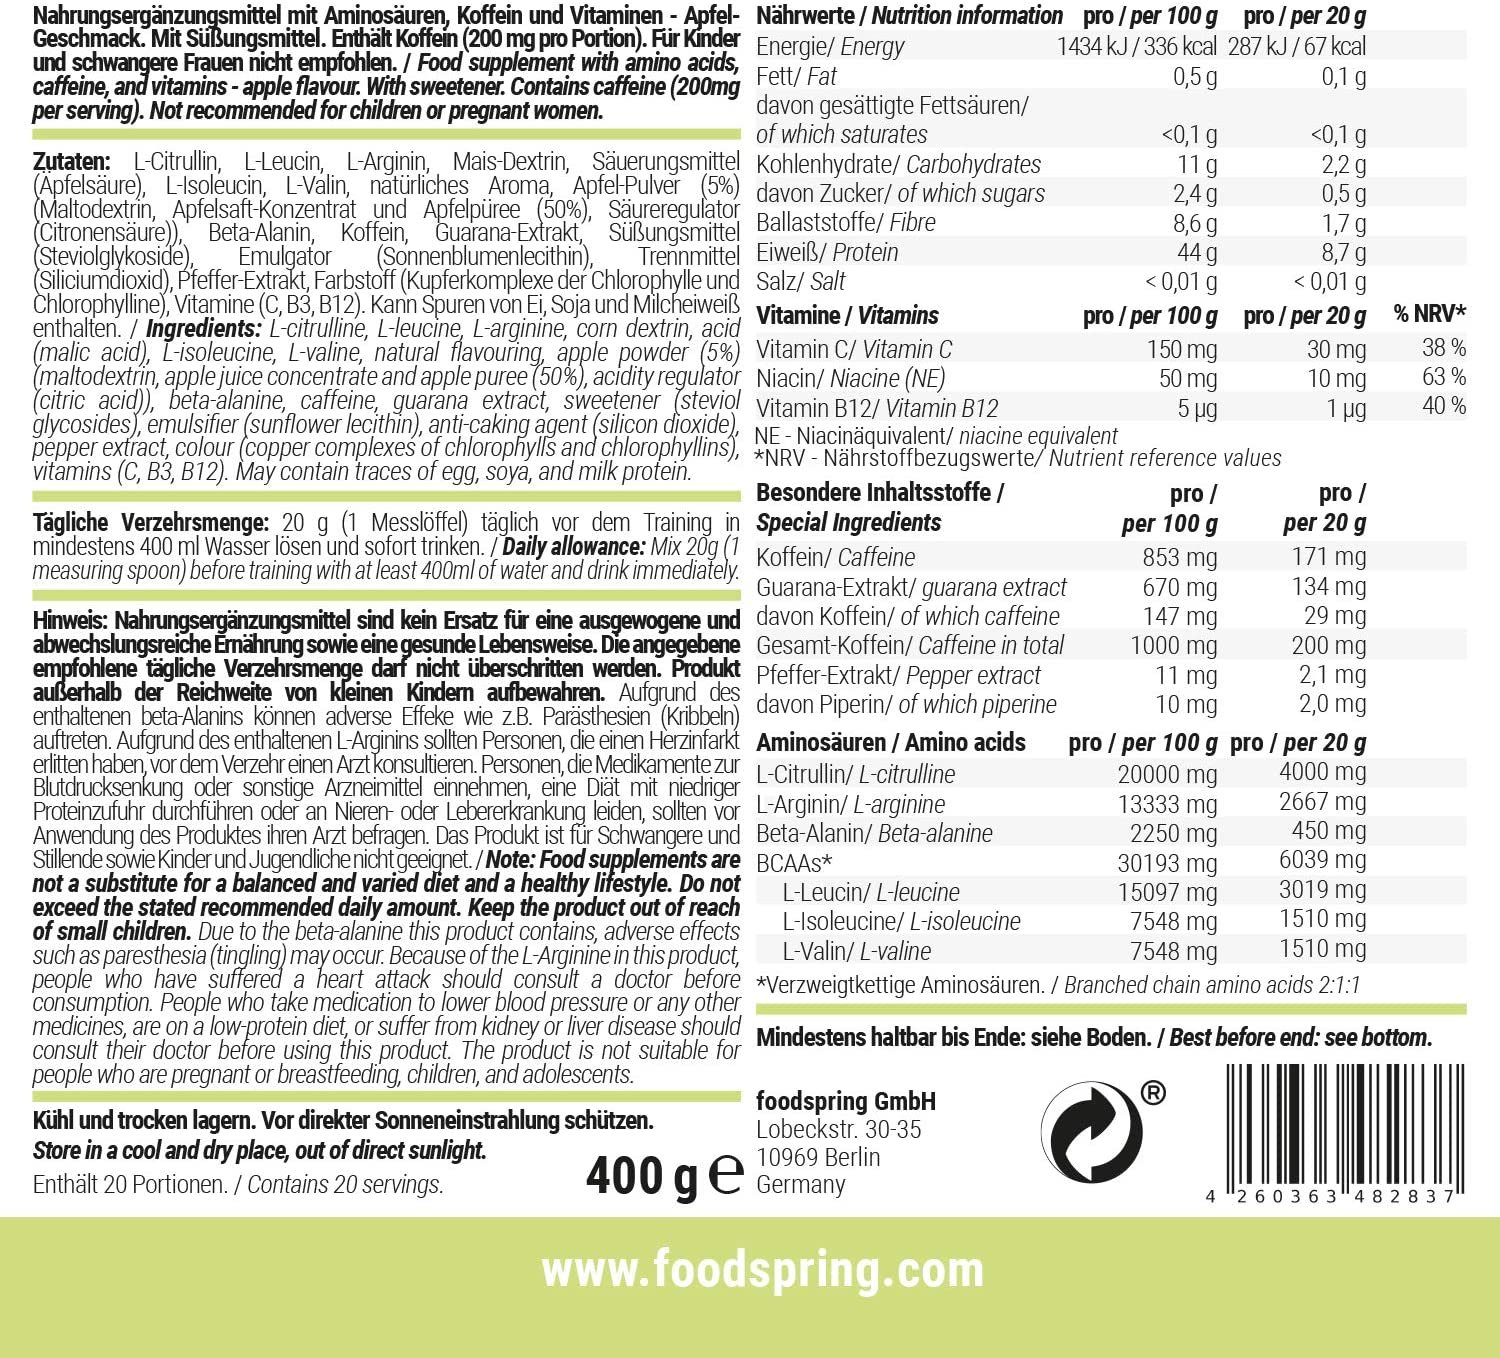 Tabla Nutricional de Energy Aminos de la marca foodspring